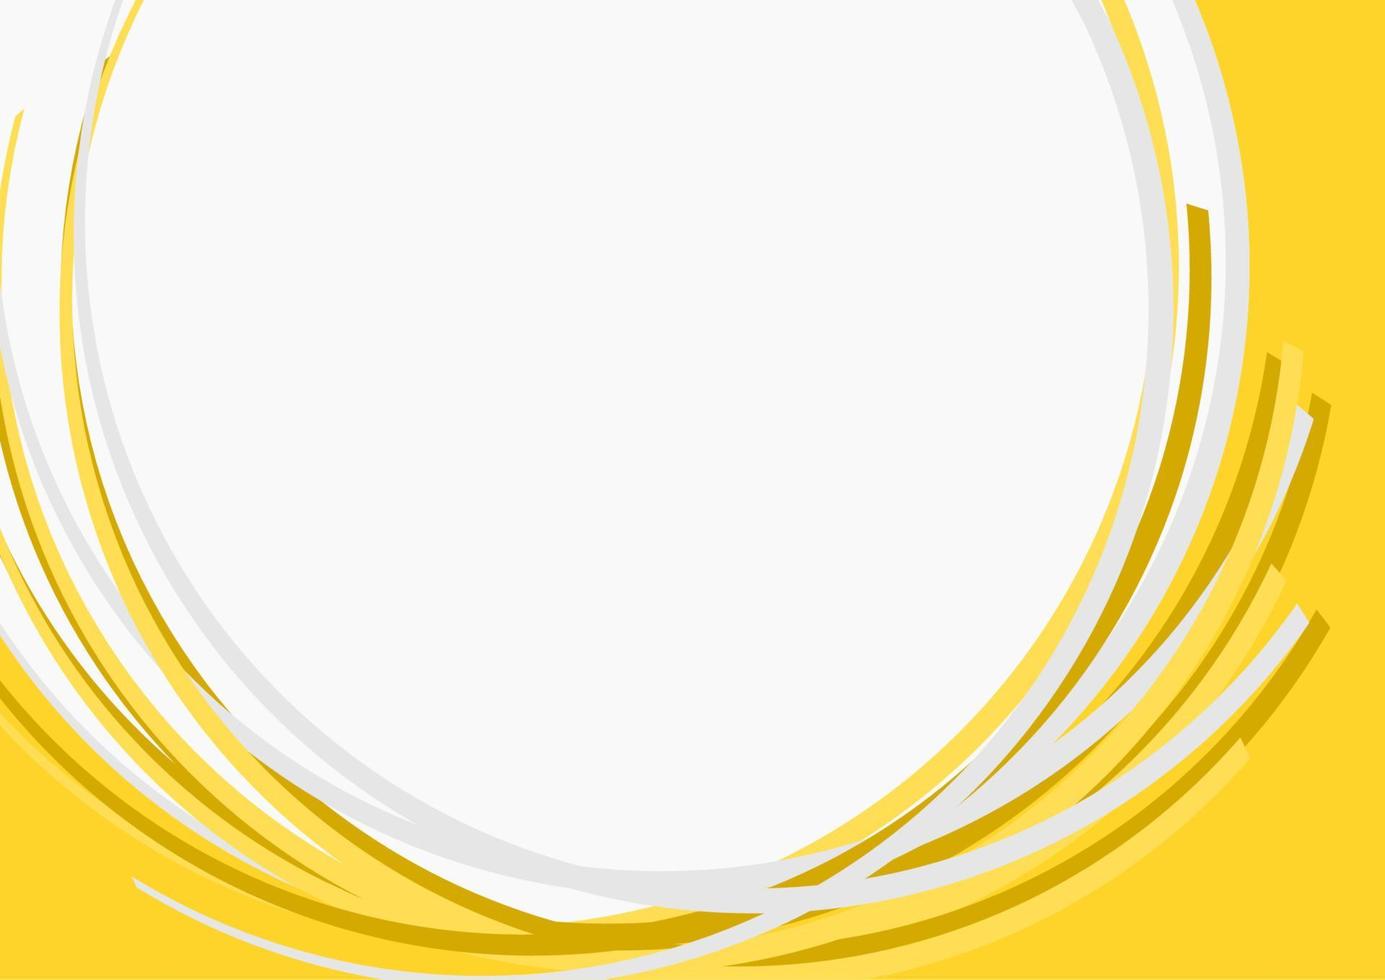 Bearbeitbare abstrakte gelbe Bögen Vektorformen für Texthintergrund vektor